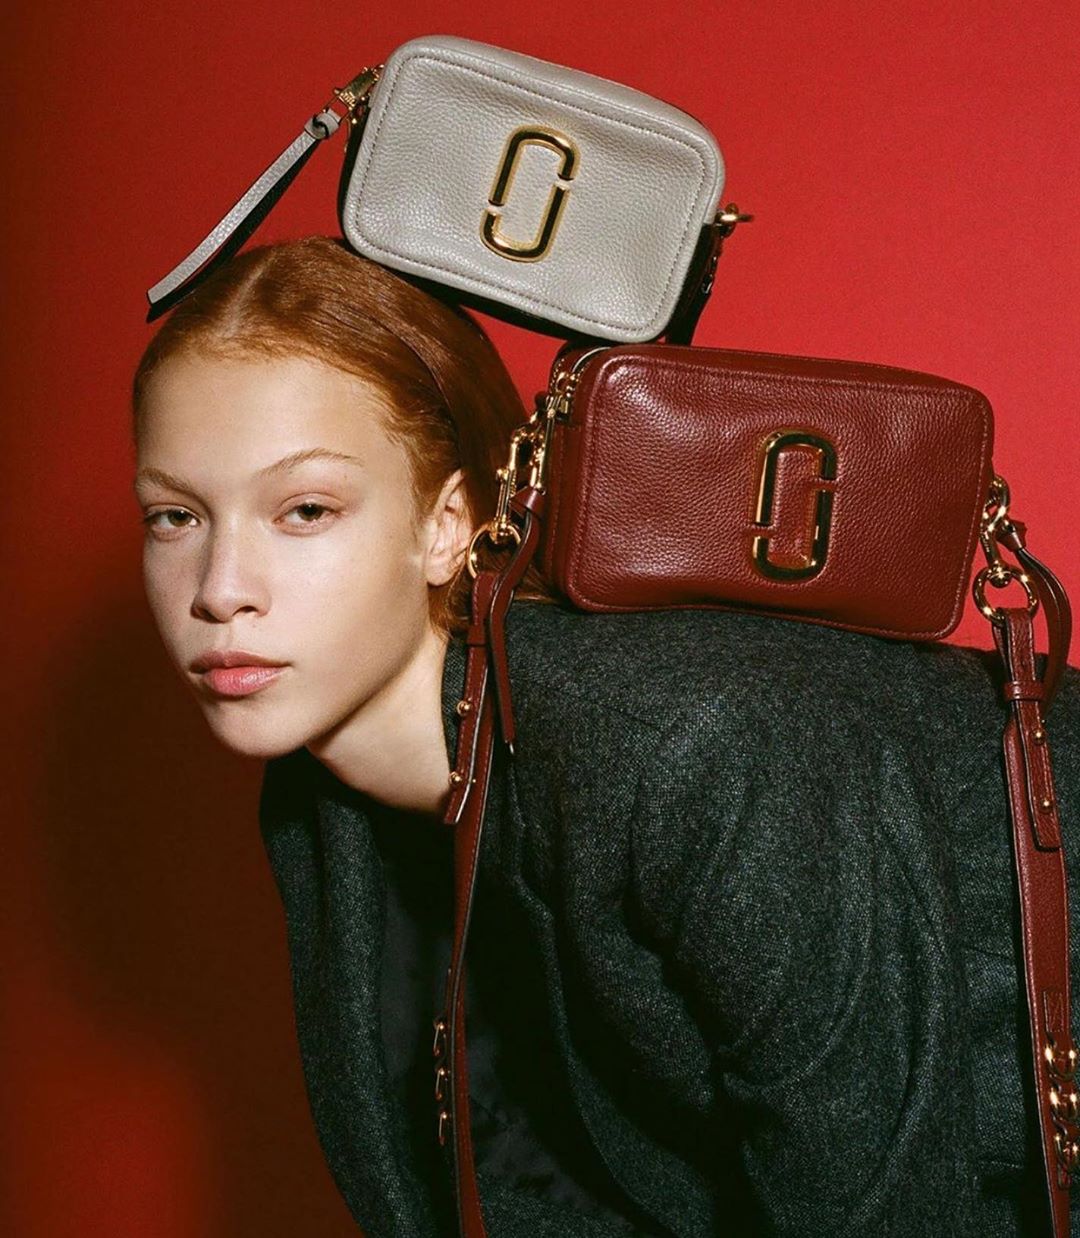 Online-бутик брендовой одежды - Компактные сумки Marc Jacobs в насыщенных осенних оттенках - must have любого образа!
Все модели на сайте Elyts.ru ❤️